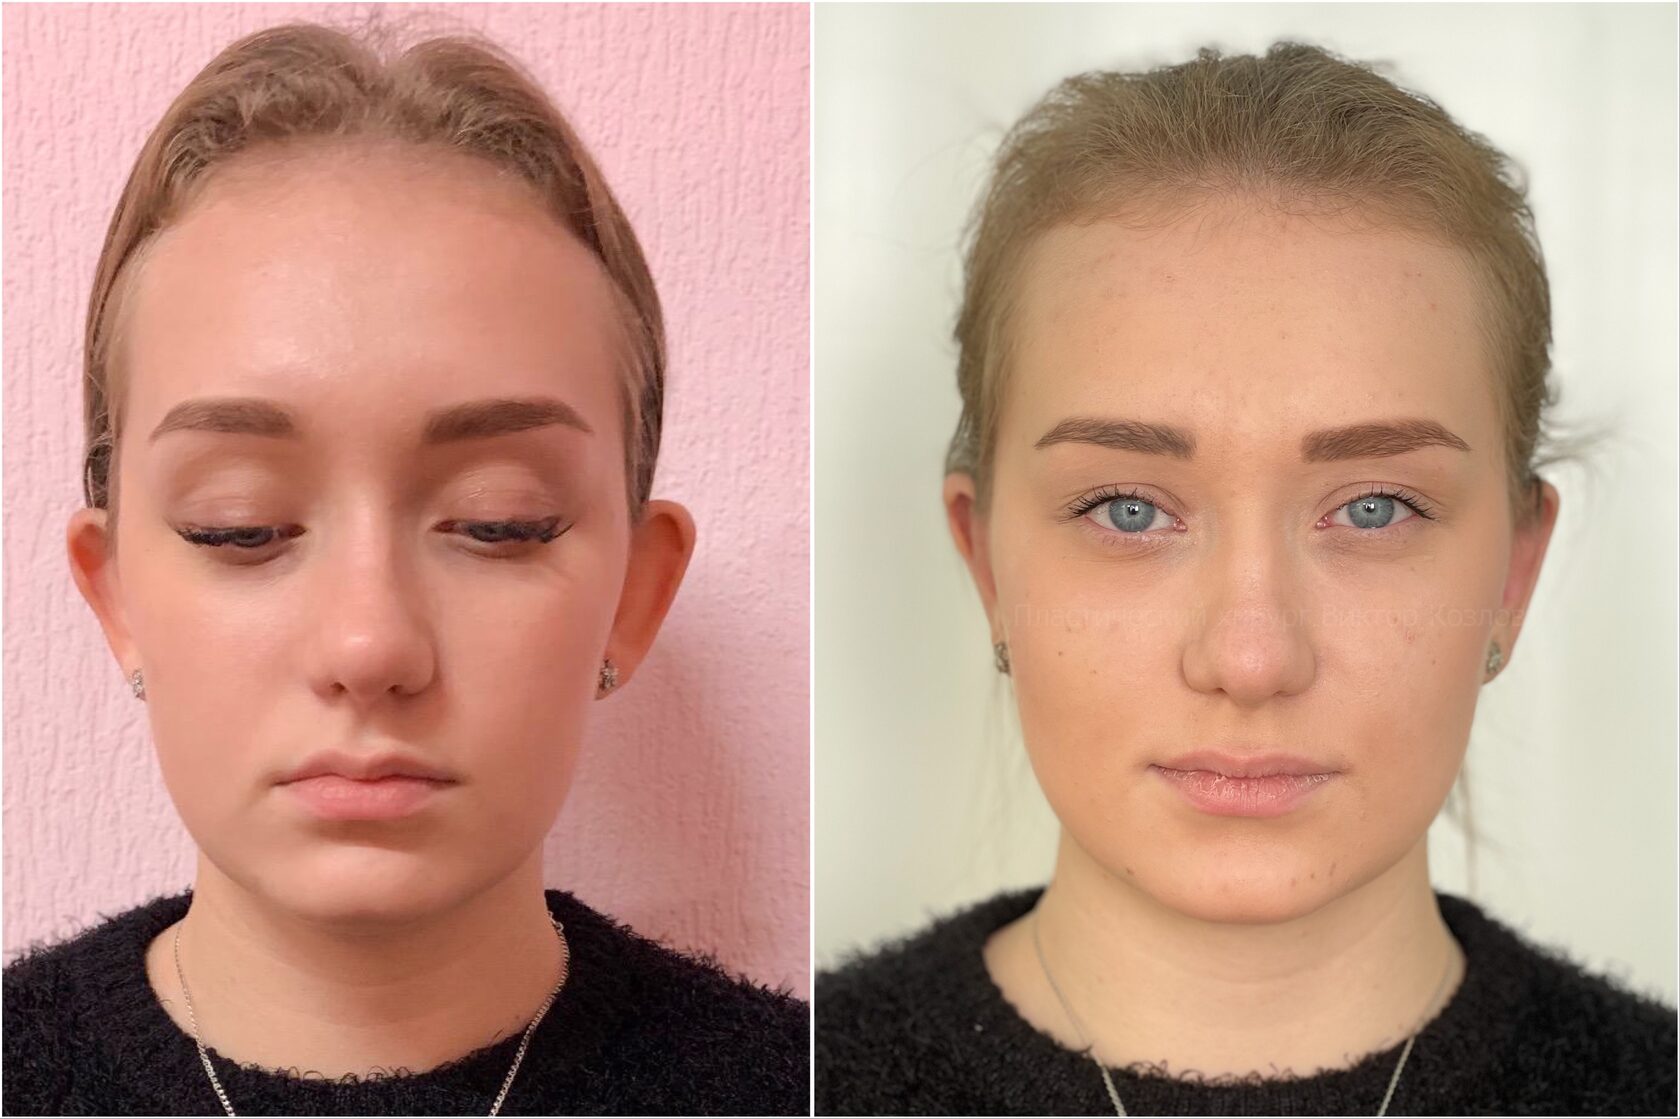 отопластика фото до и после операции